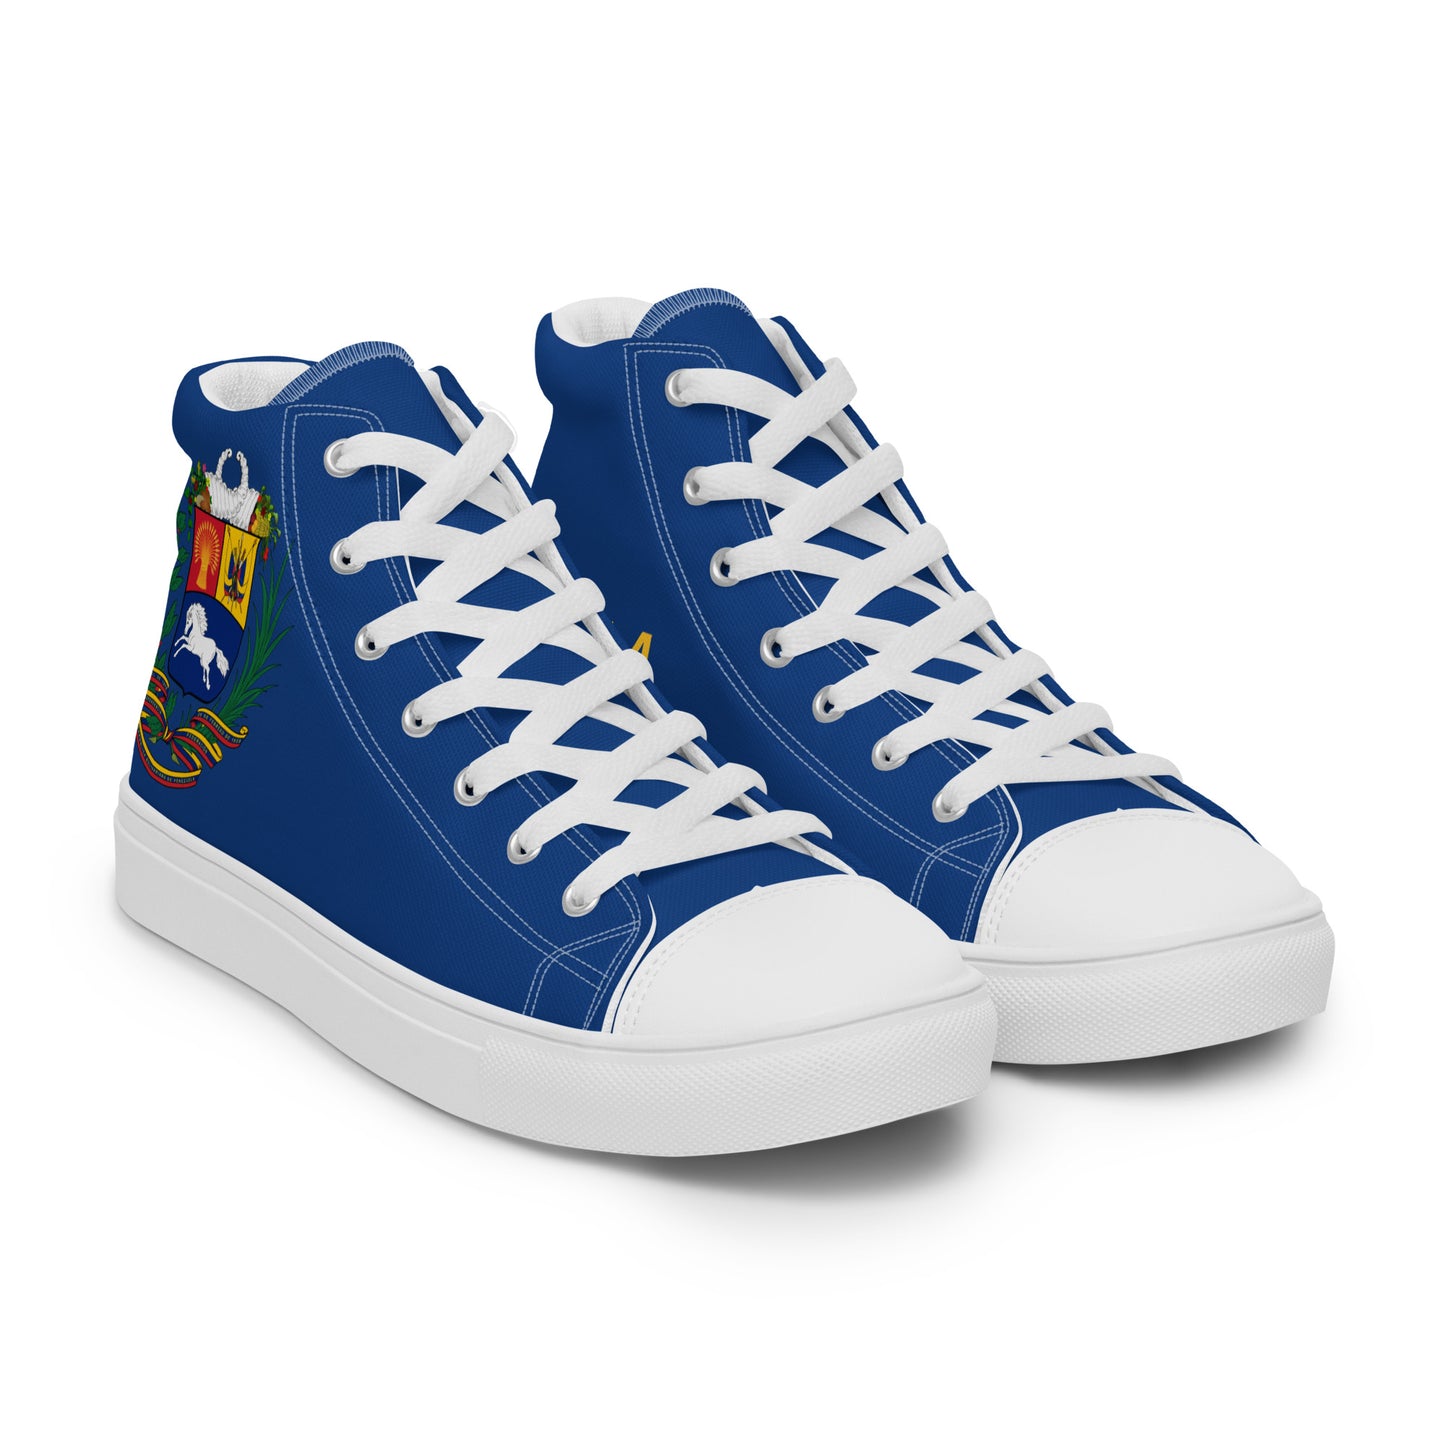 Venezuela - Men - Blue - High top shoes